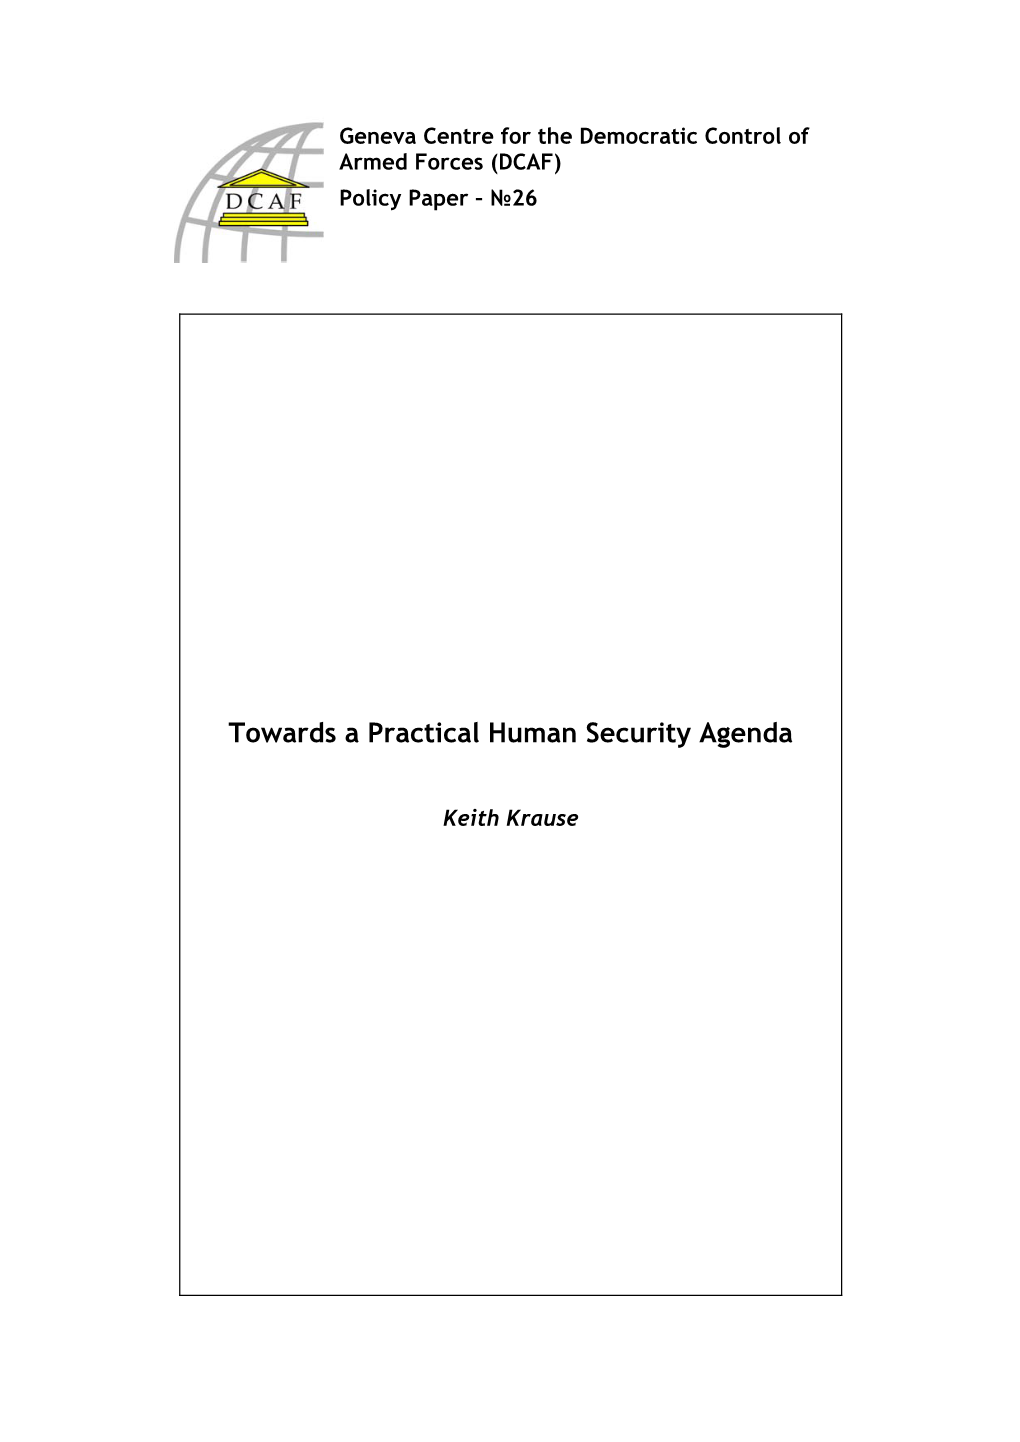 Towards a Practical Human Security Agenda